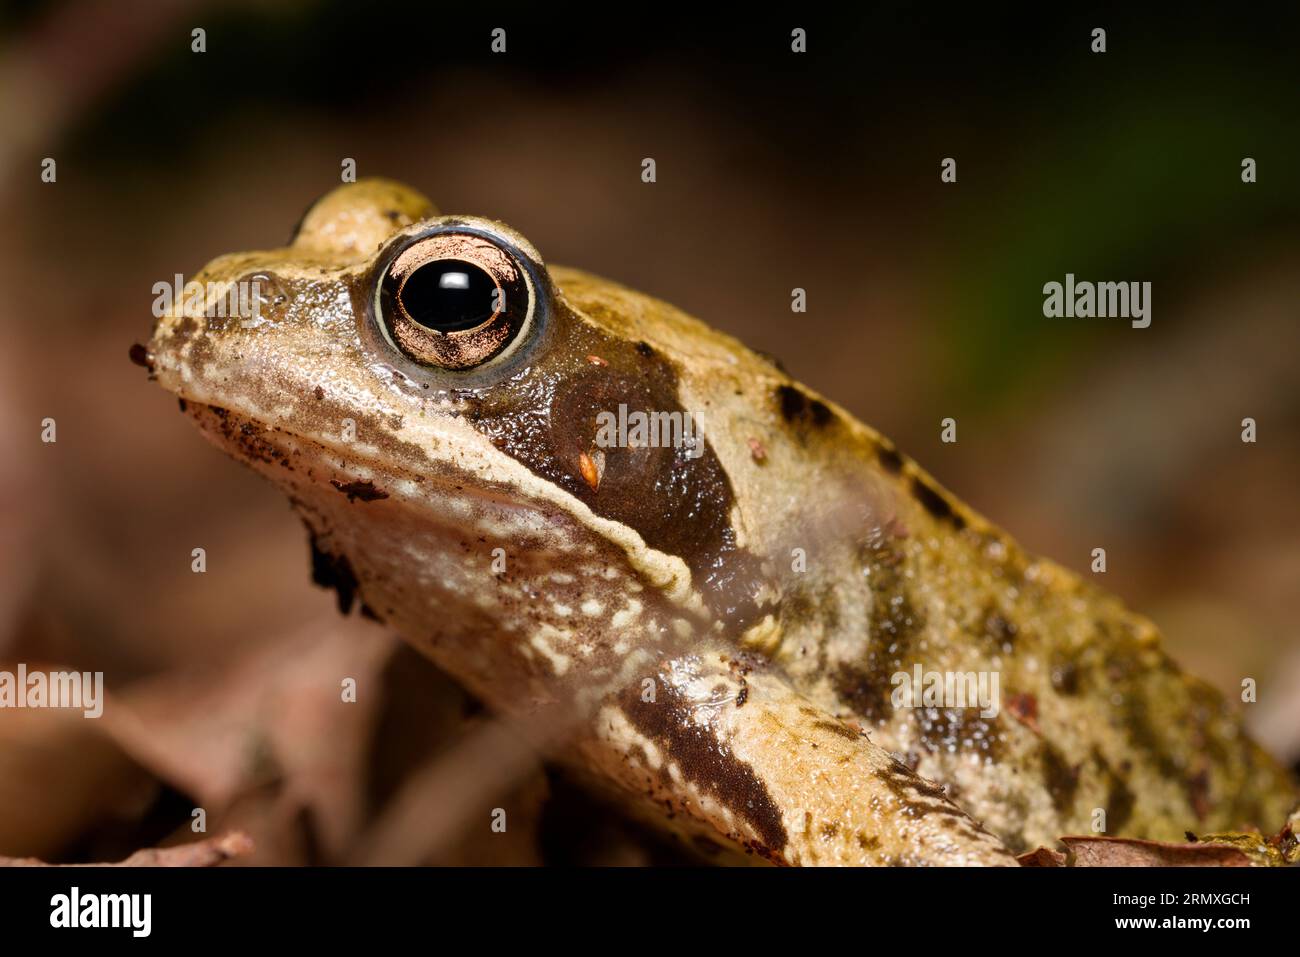 Primer plano de una rana con un ojo abultado sentado pacientemente por sí solo en un bosque oscuro, con un ojo mirando y la luz formando una luz de captación en su ojo. Foto de stock